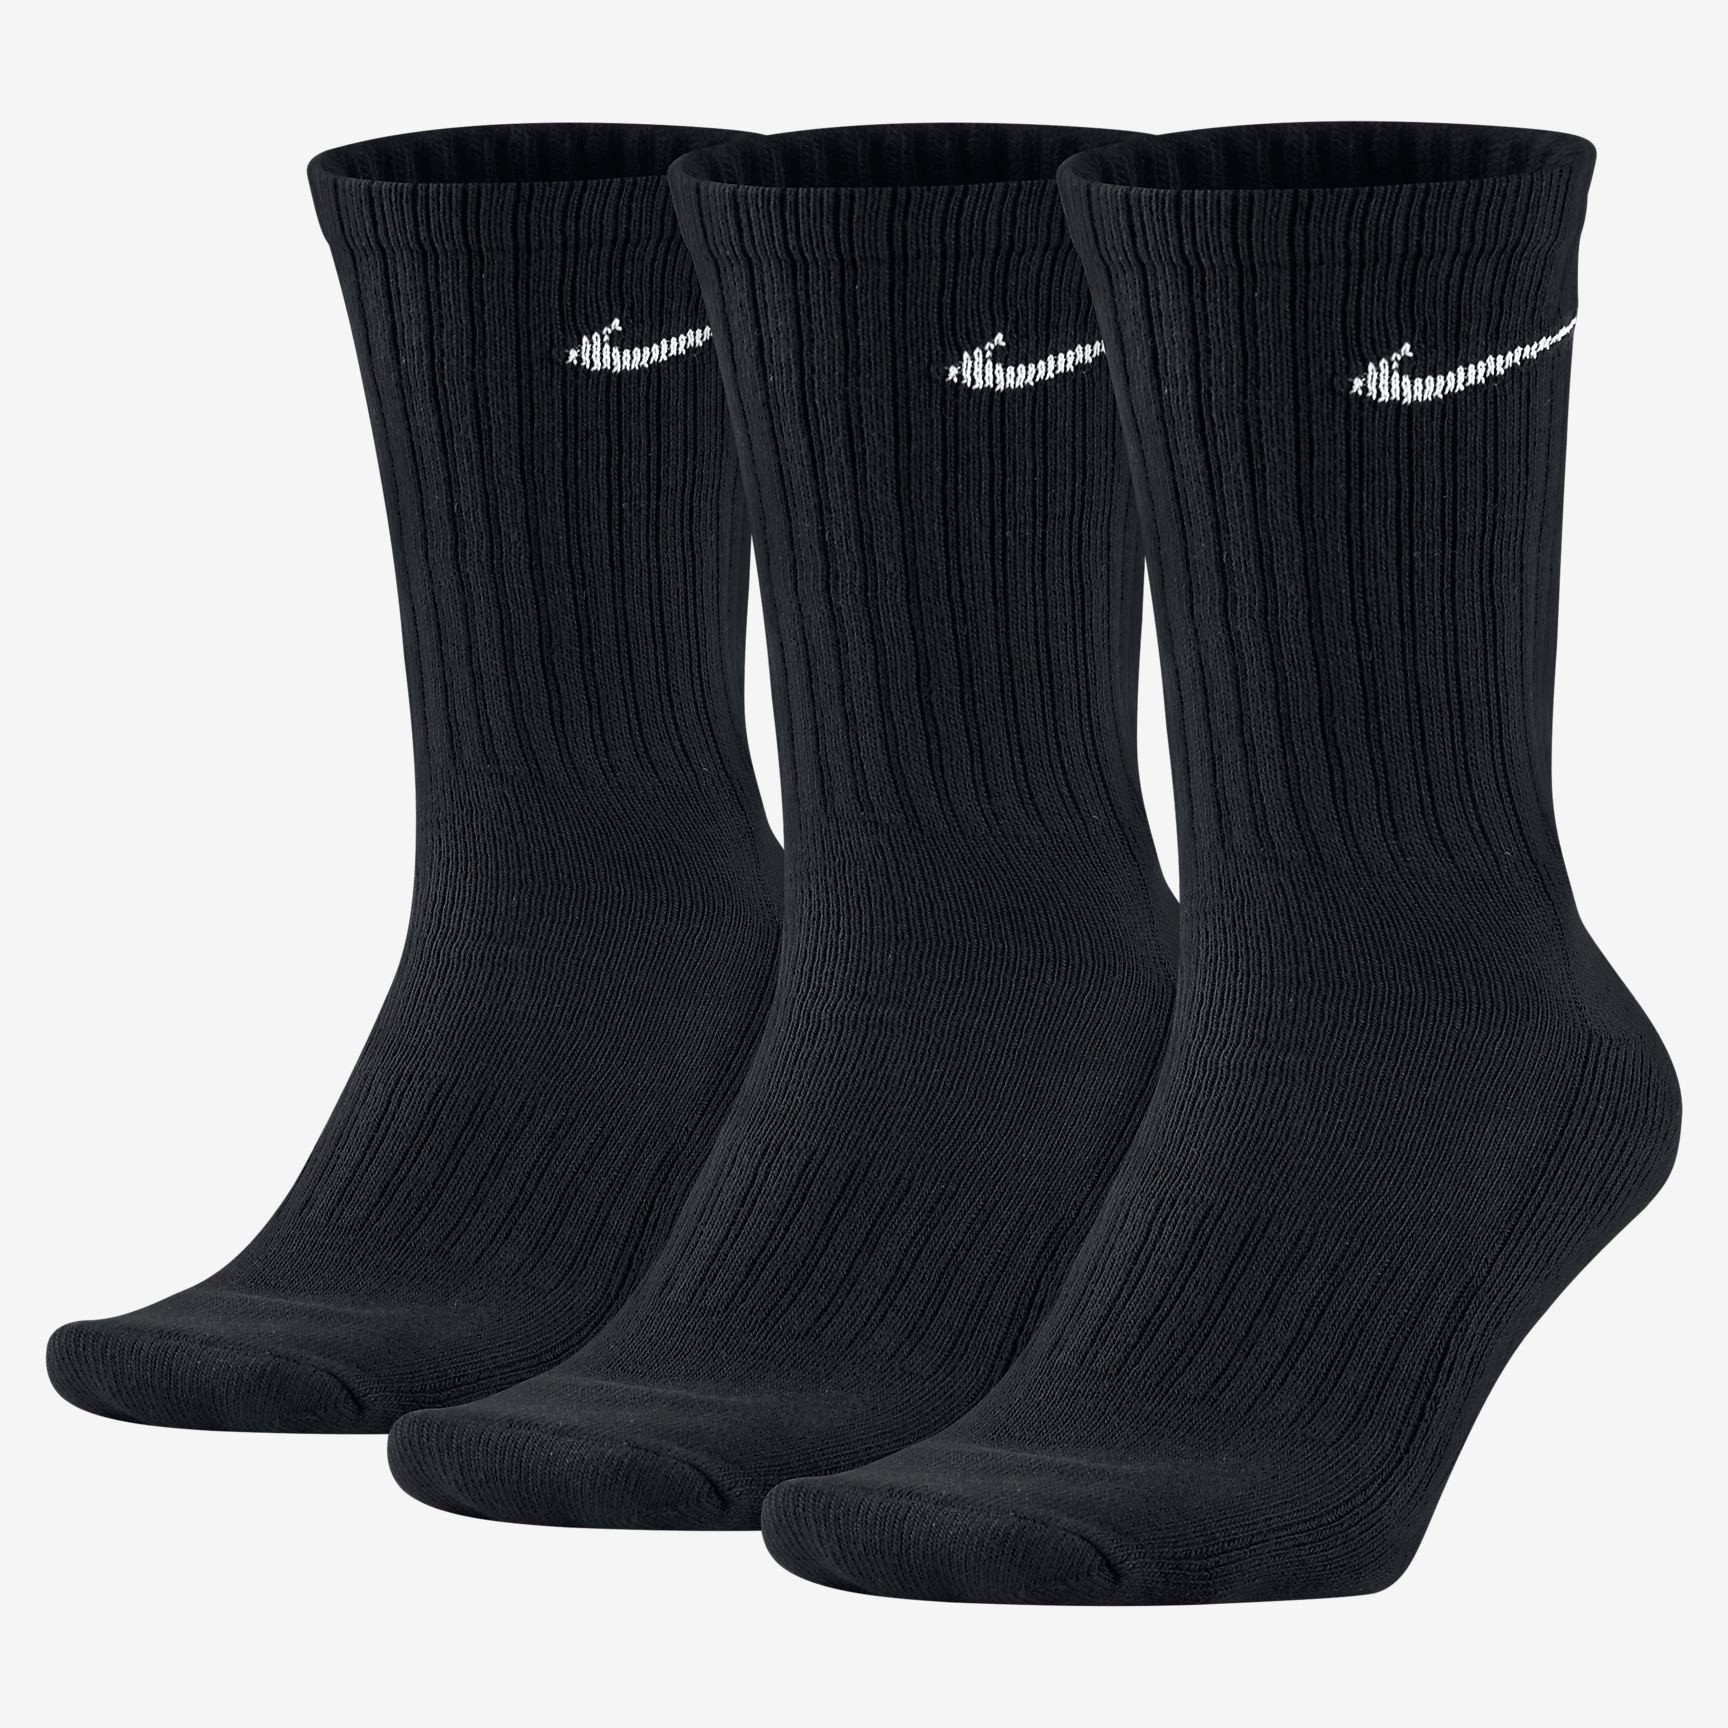 Nke Socks